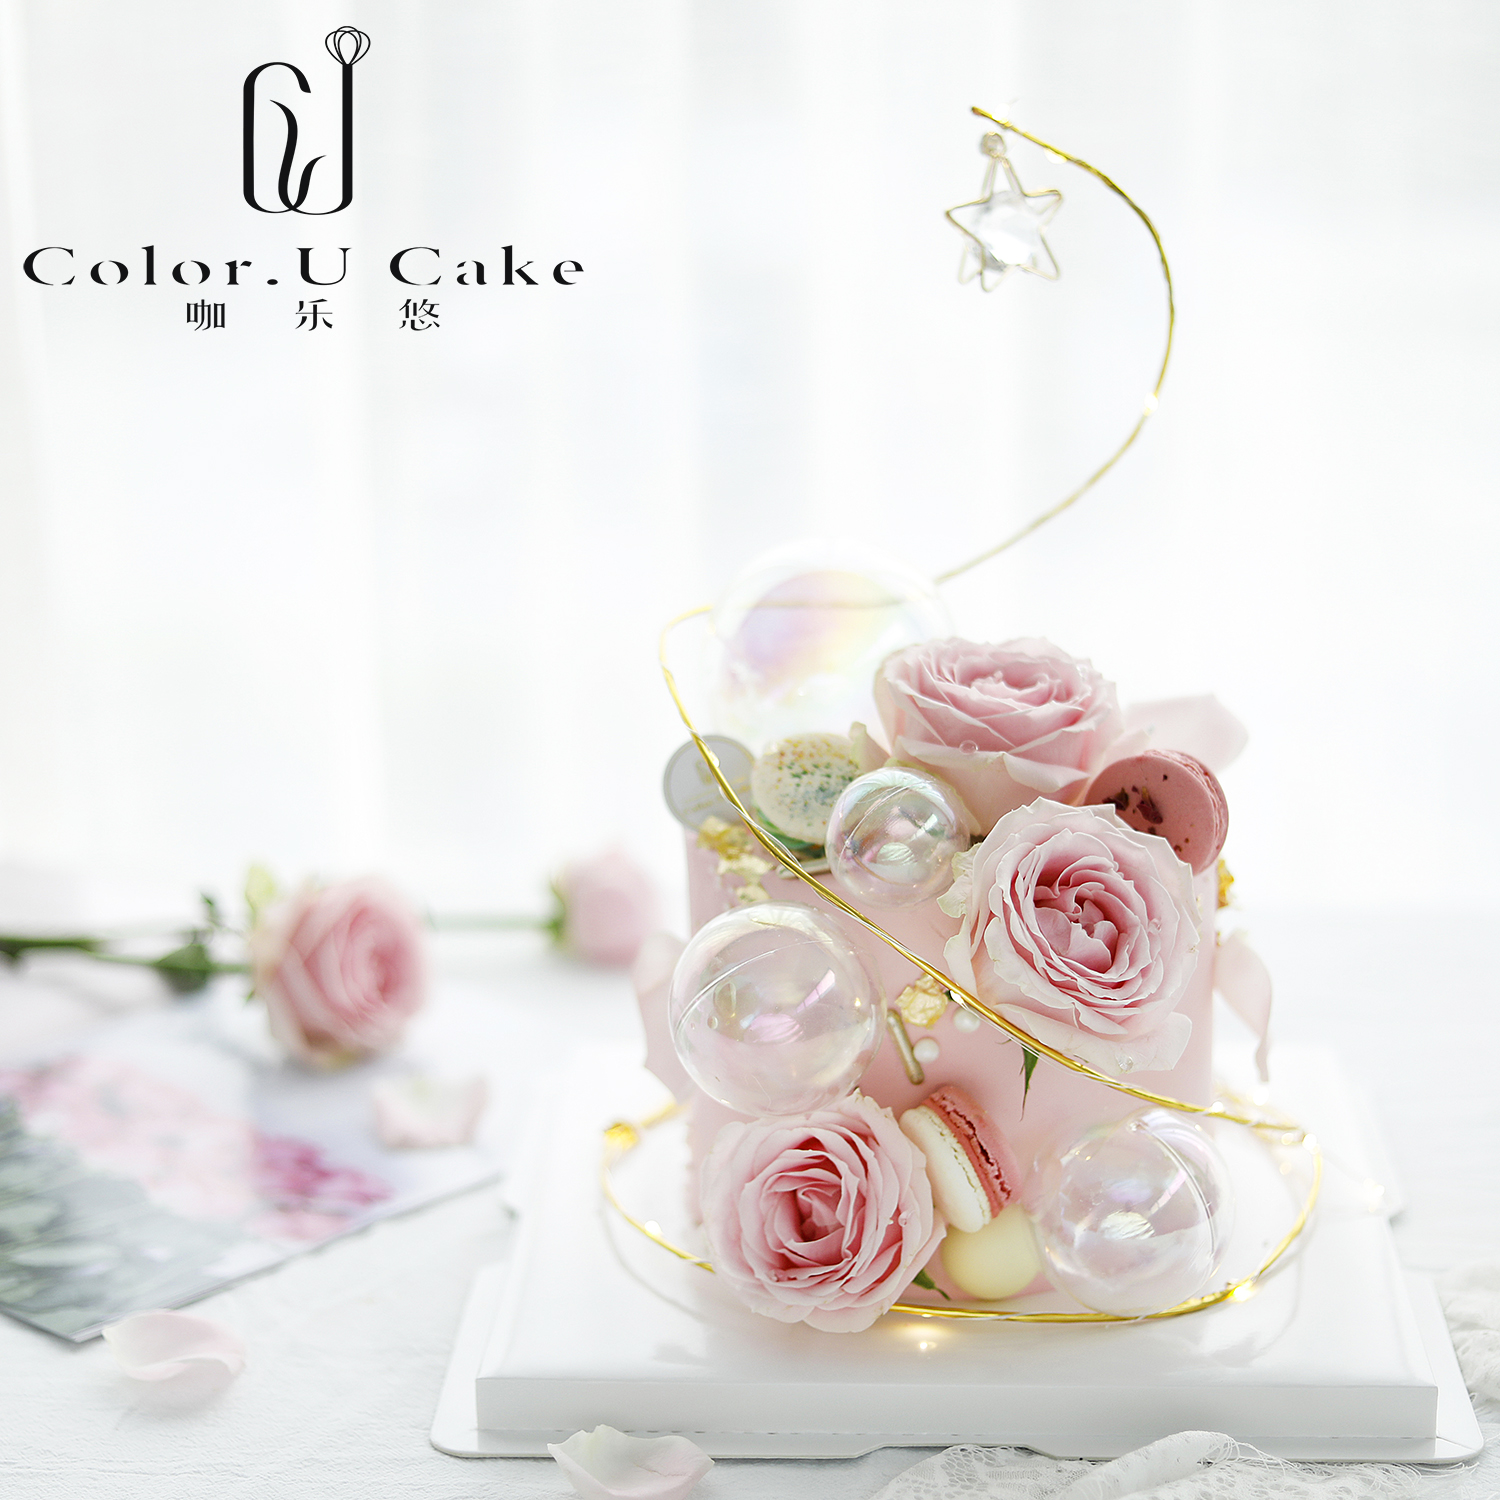 鲜花蛋糕玫瑰个性设计唯美女款奶油生日蛋糕女神女友妈妈杭州上海